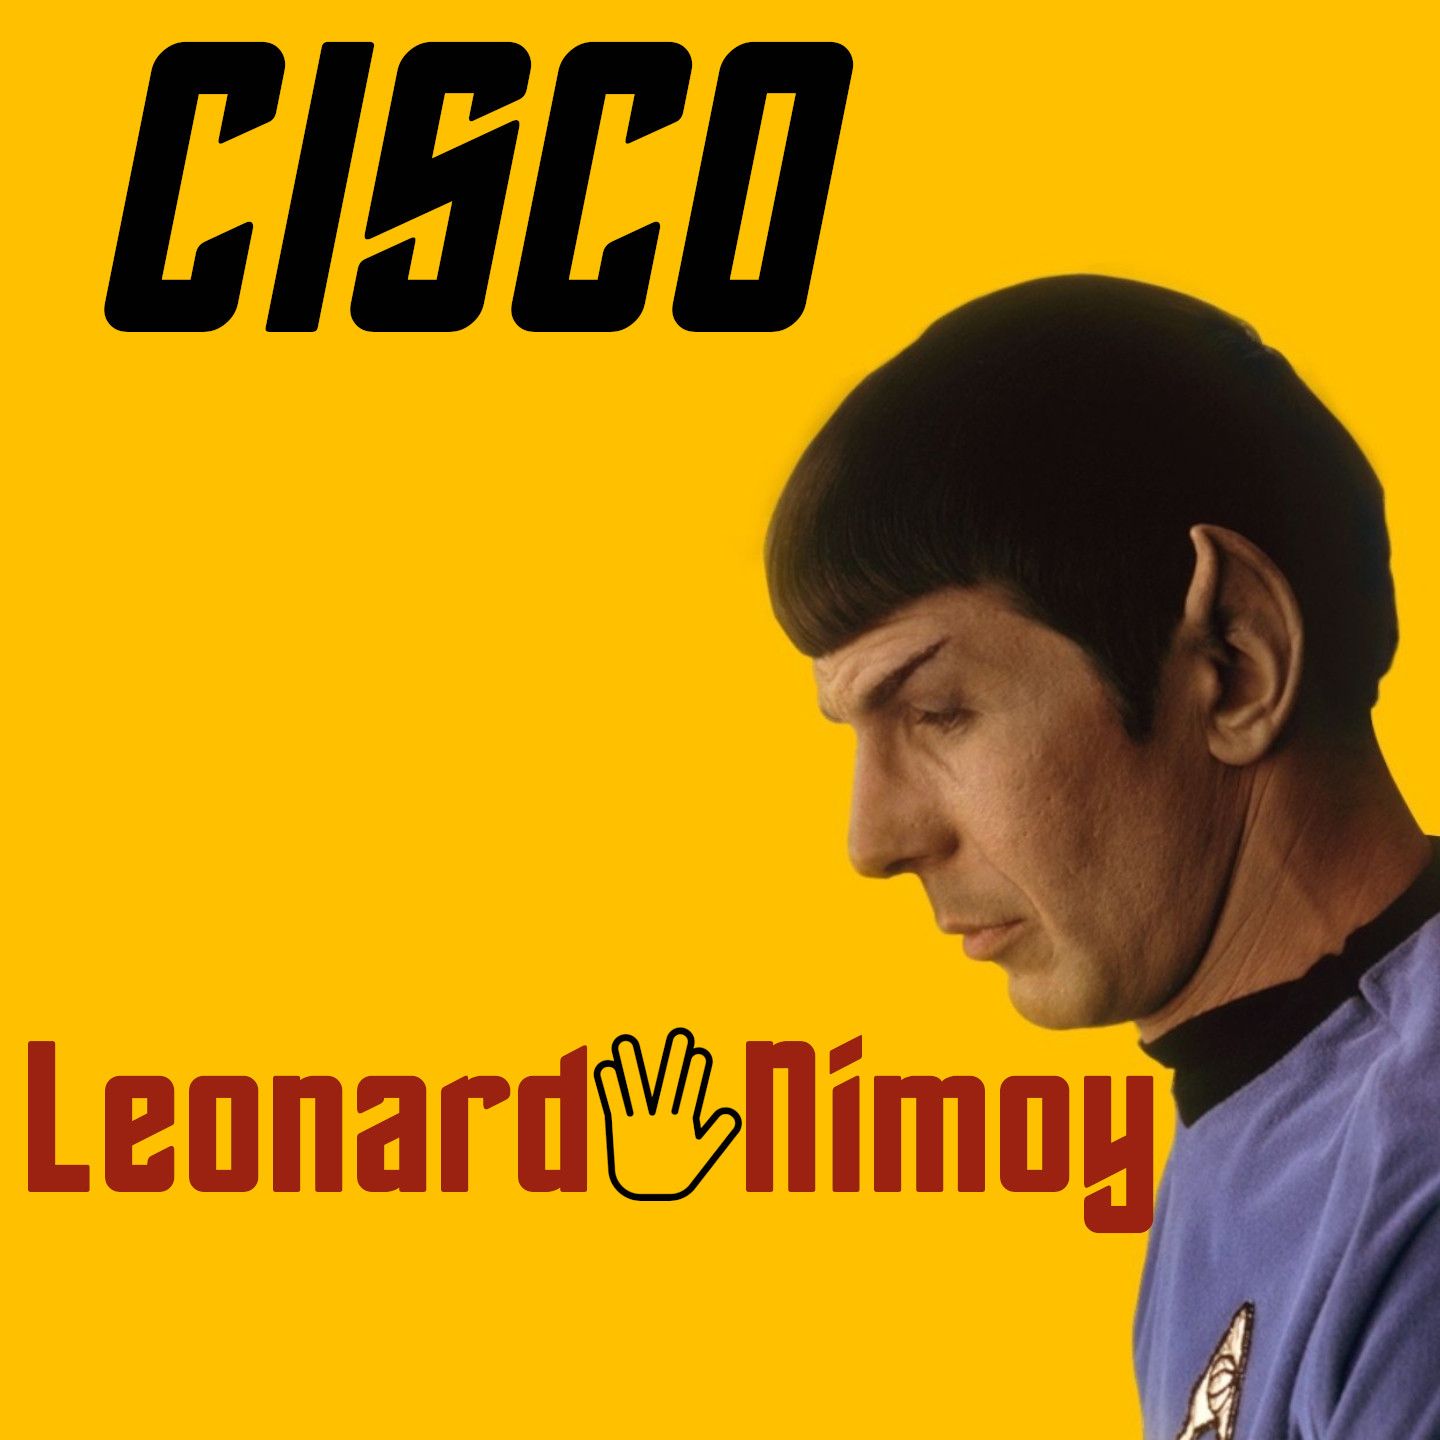 Cisco pubblica il quarto singolo “Leonard Nimoy”